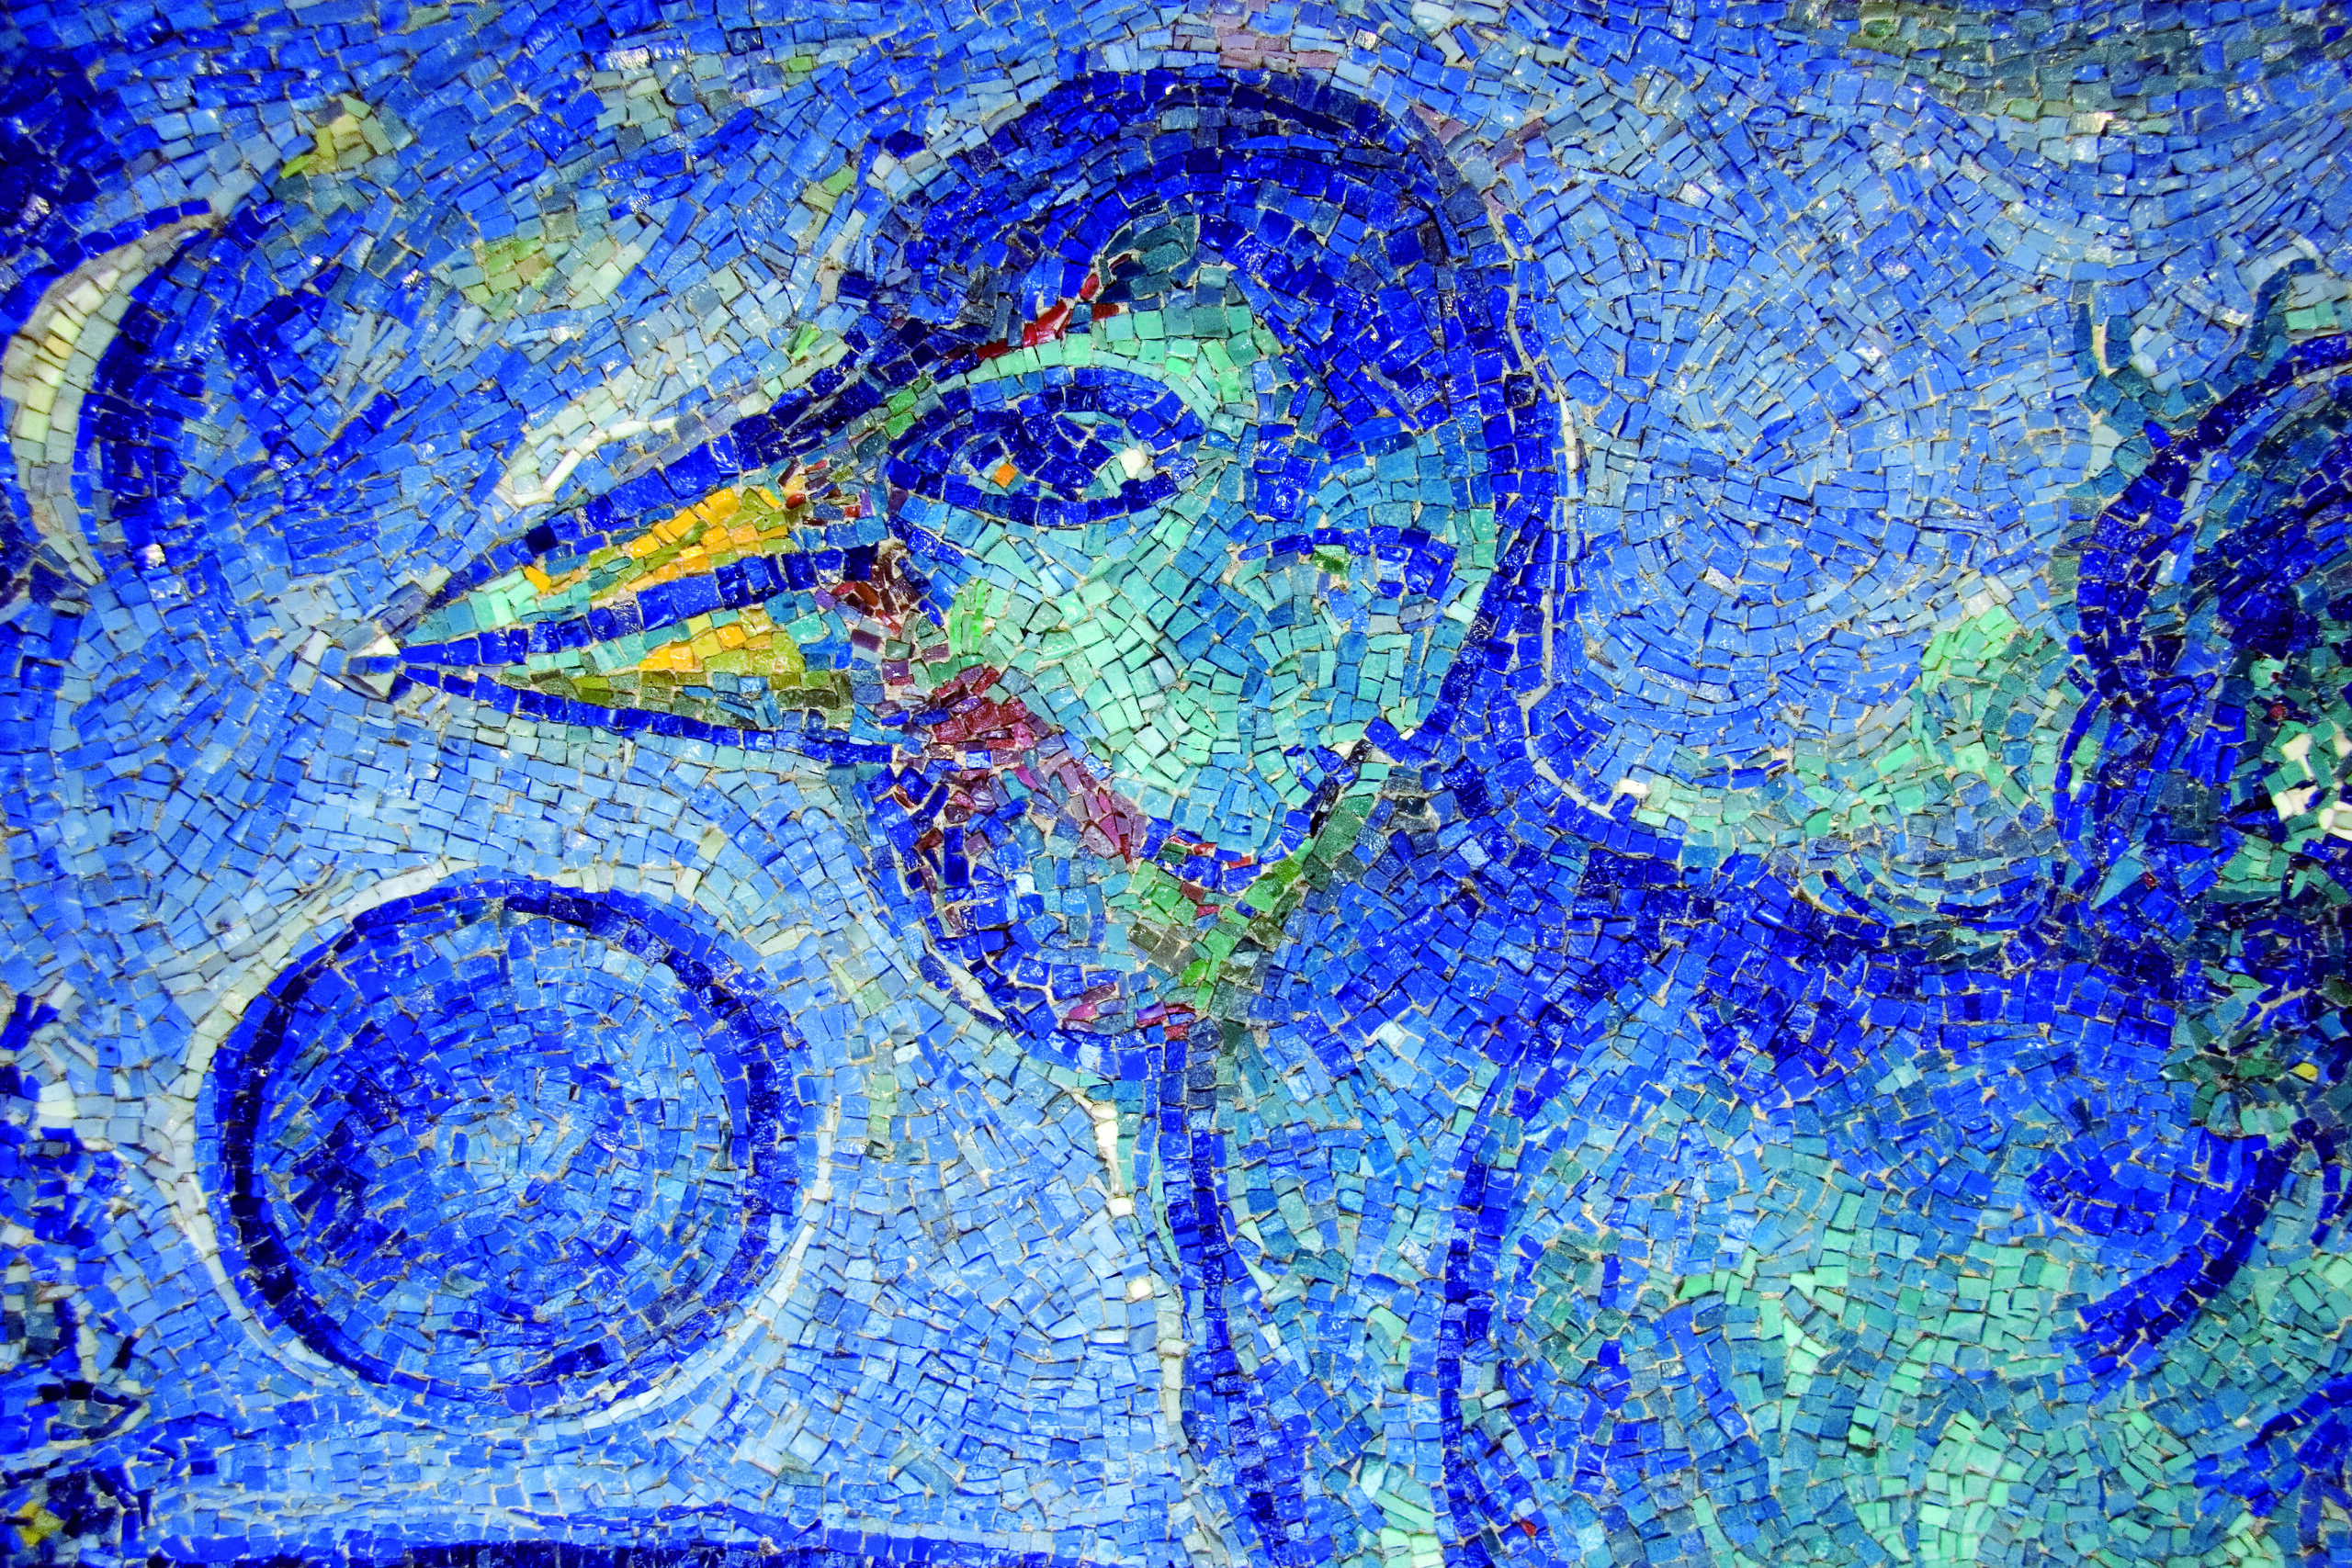 Marc Chagall, Antonio Rocchi, Le coq bleu, 1958-1959, opera musiva tessellata paste vitree, smalti su pannello di agglomerati porosi vegetali e cemento 104 x 155 x 8 cm, Ravenna, MAR - Museo d’Arte della città di Ravenna, particolare